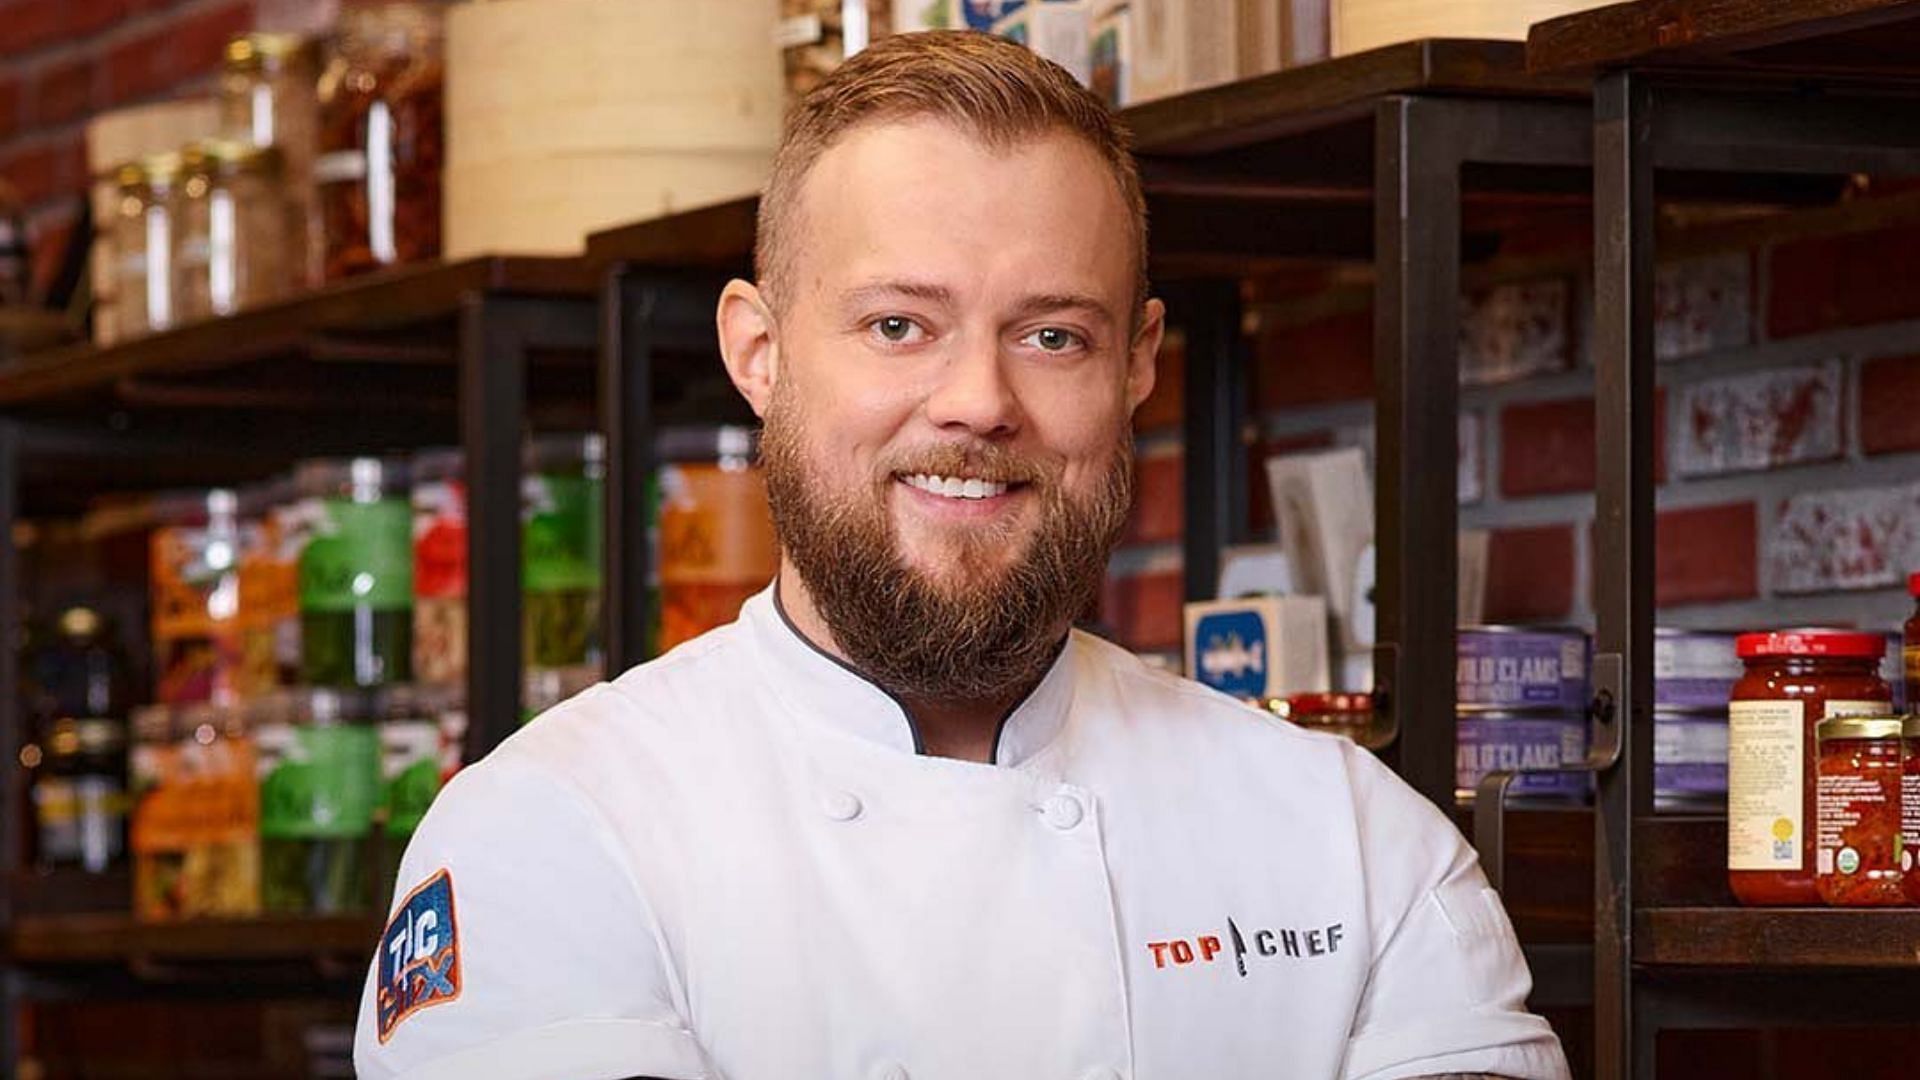 Luke Kolpin from Top Chef Season 19 (Image via lukekolpin/Instagram)